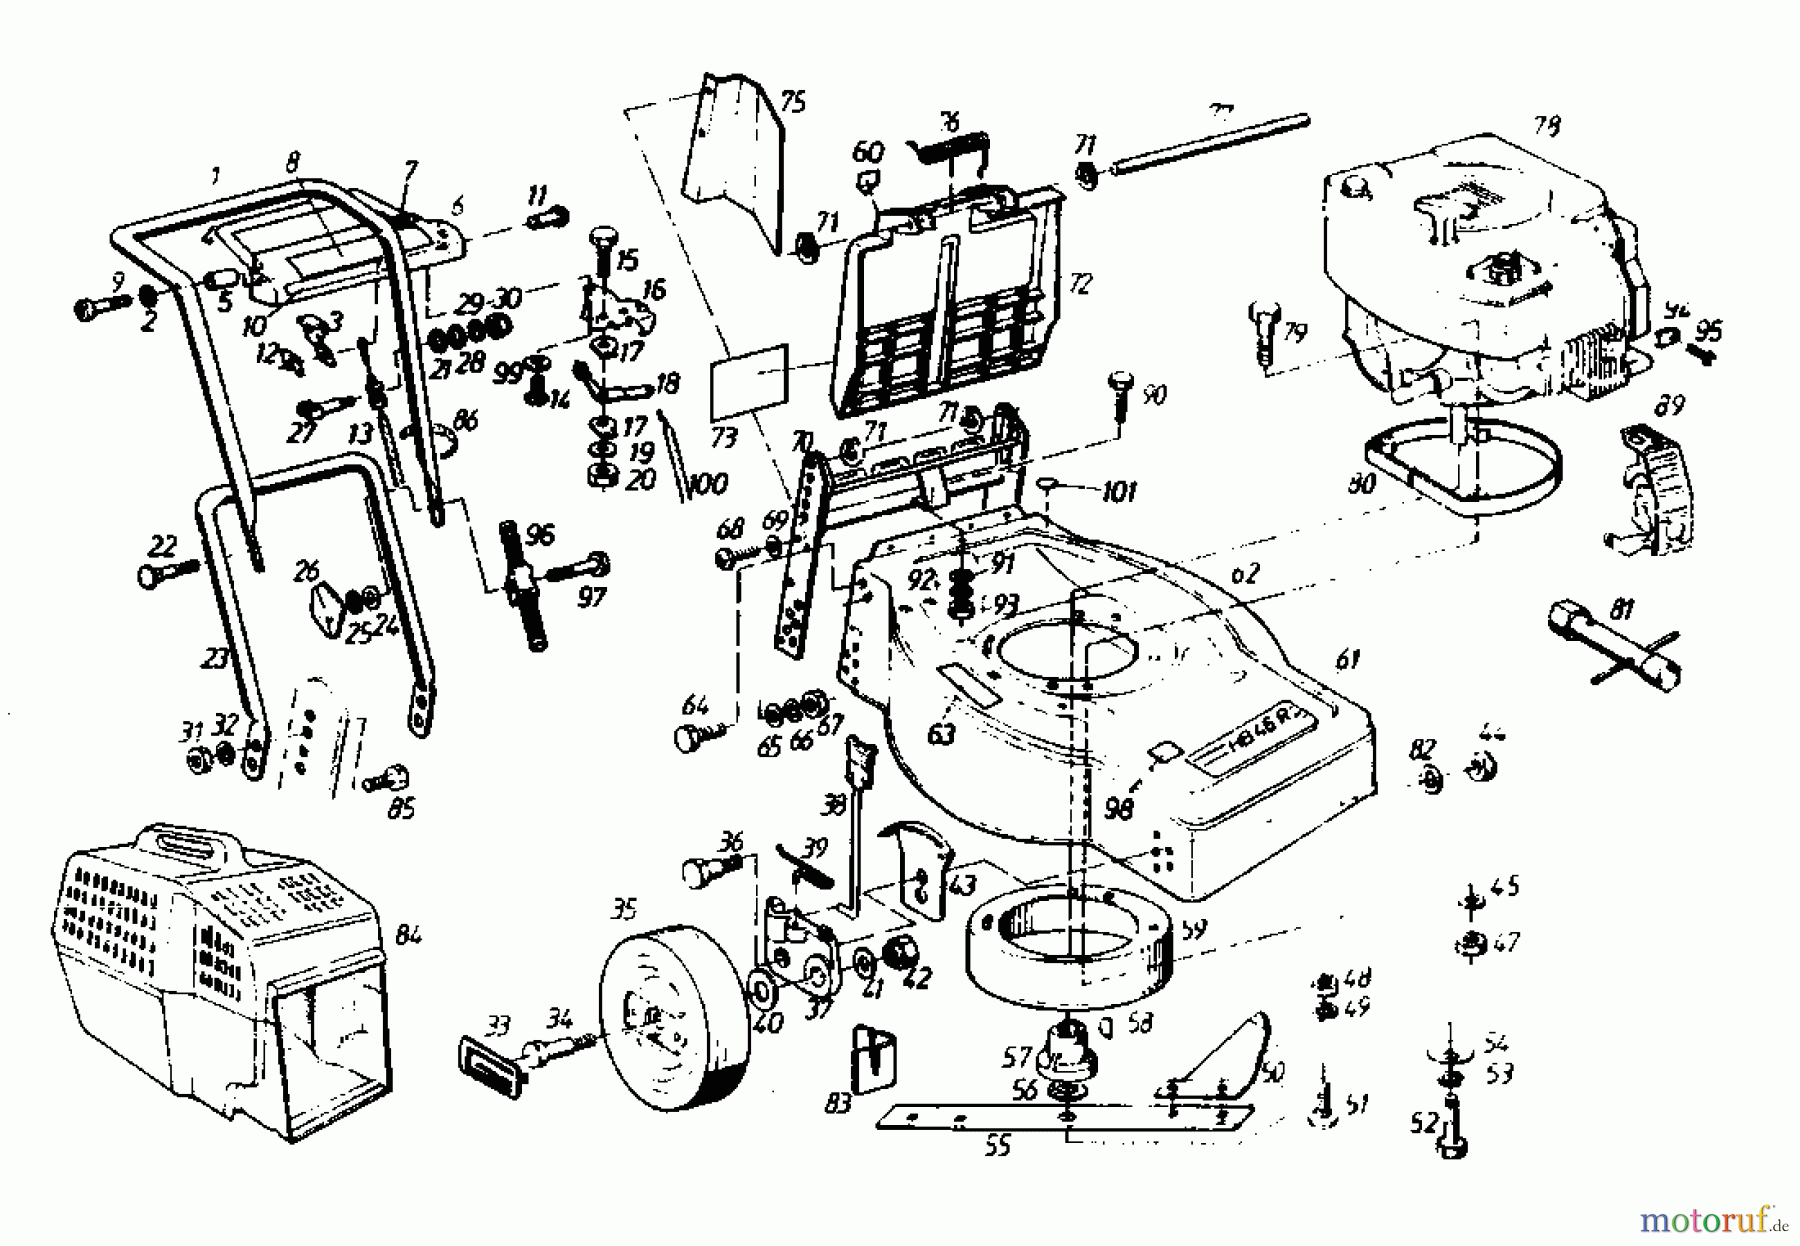  Gutbrod Motormäher mit Antrieb HB 46 R 02877.02  (1988) Grundgerät